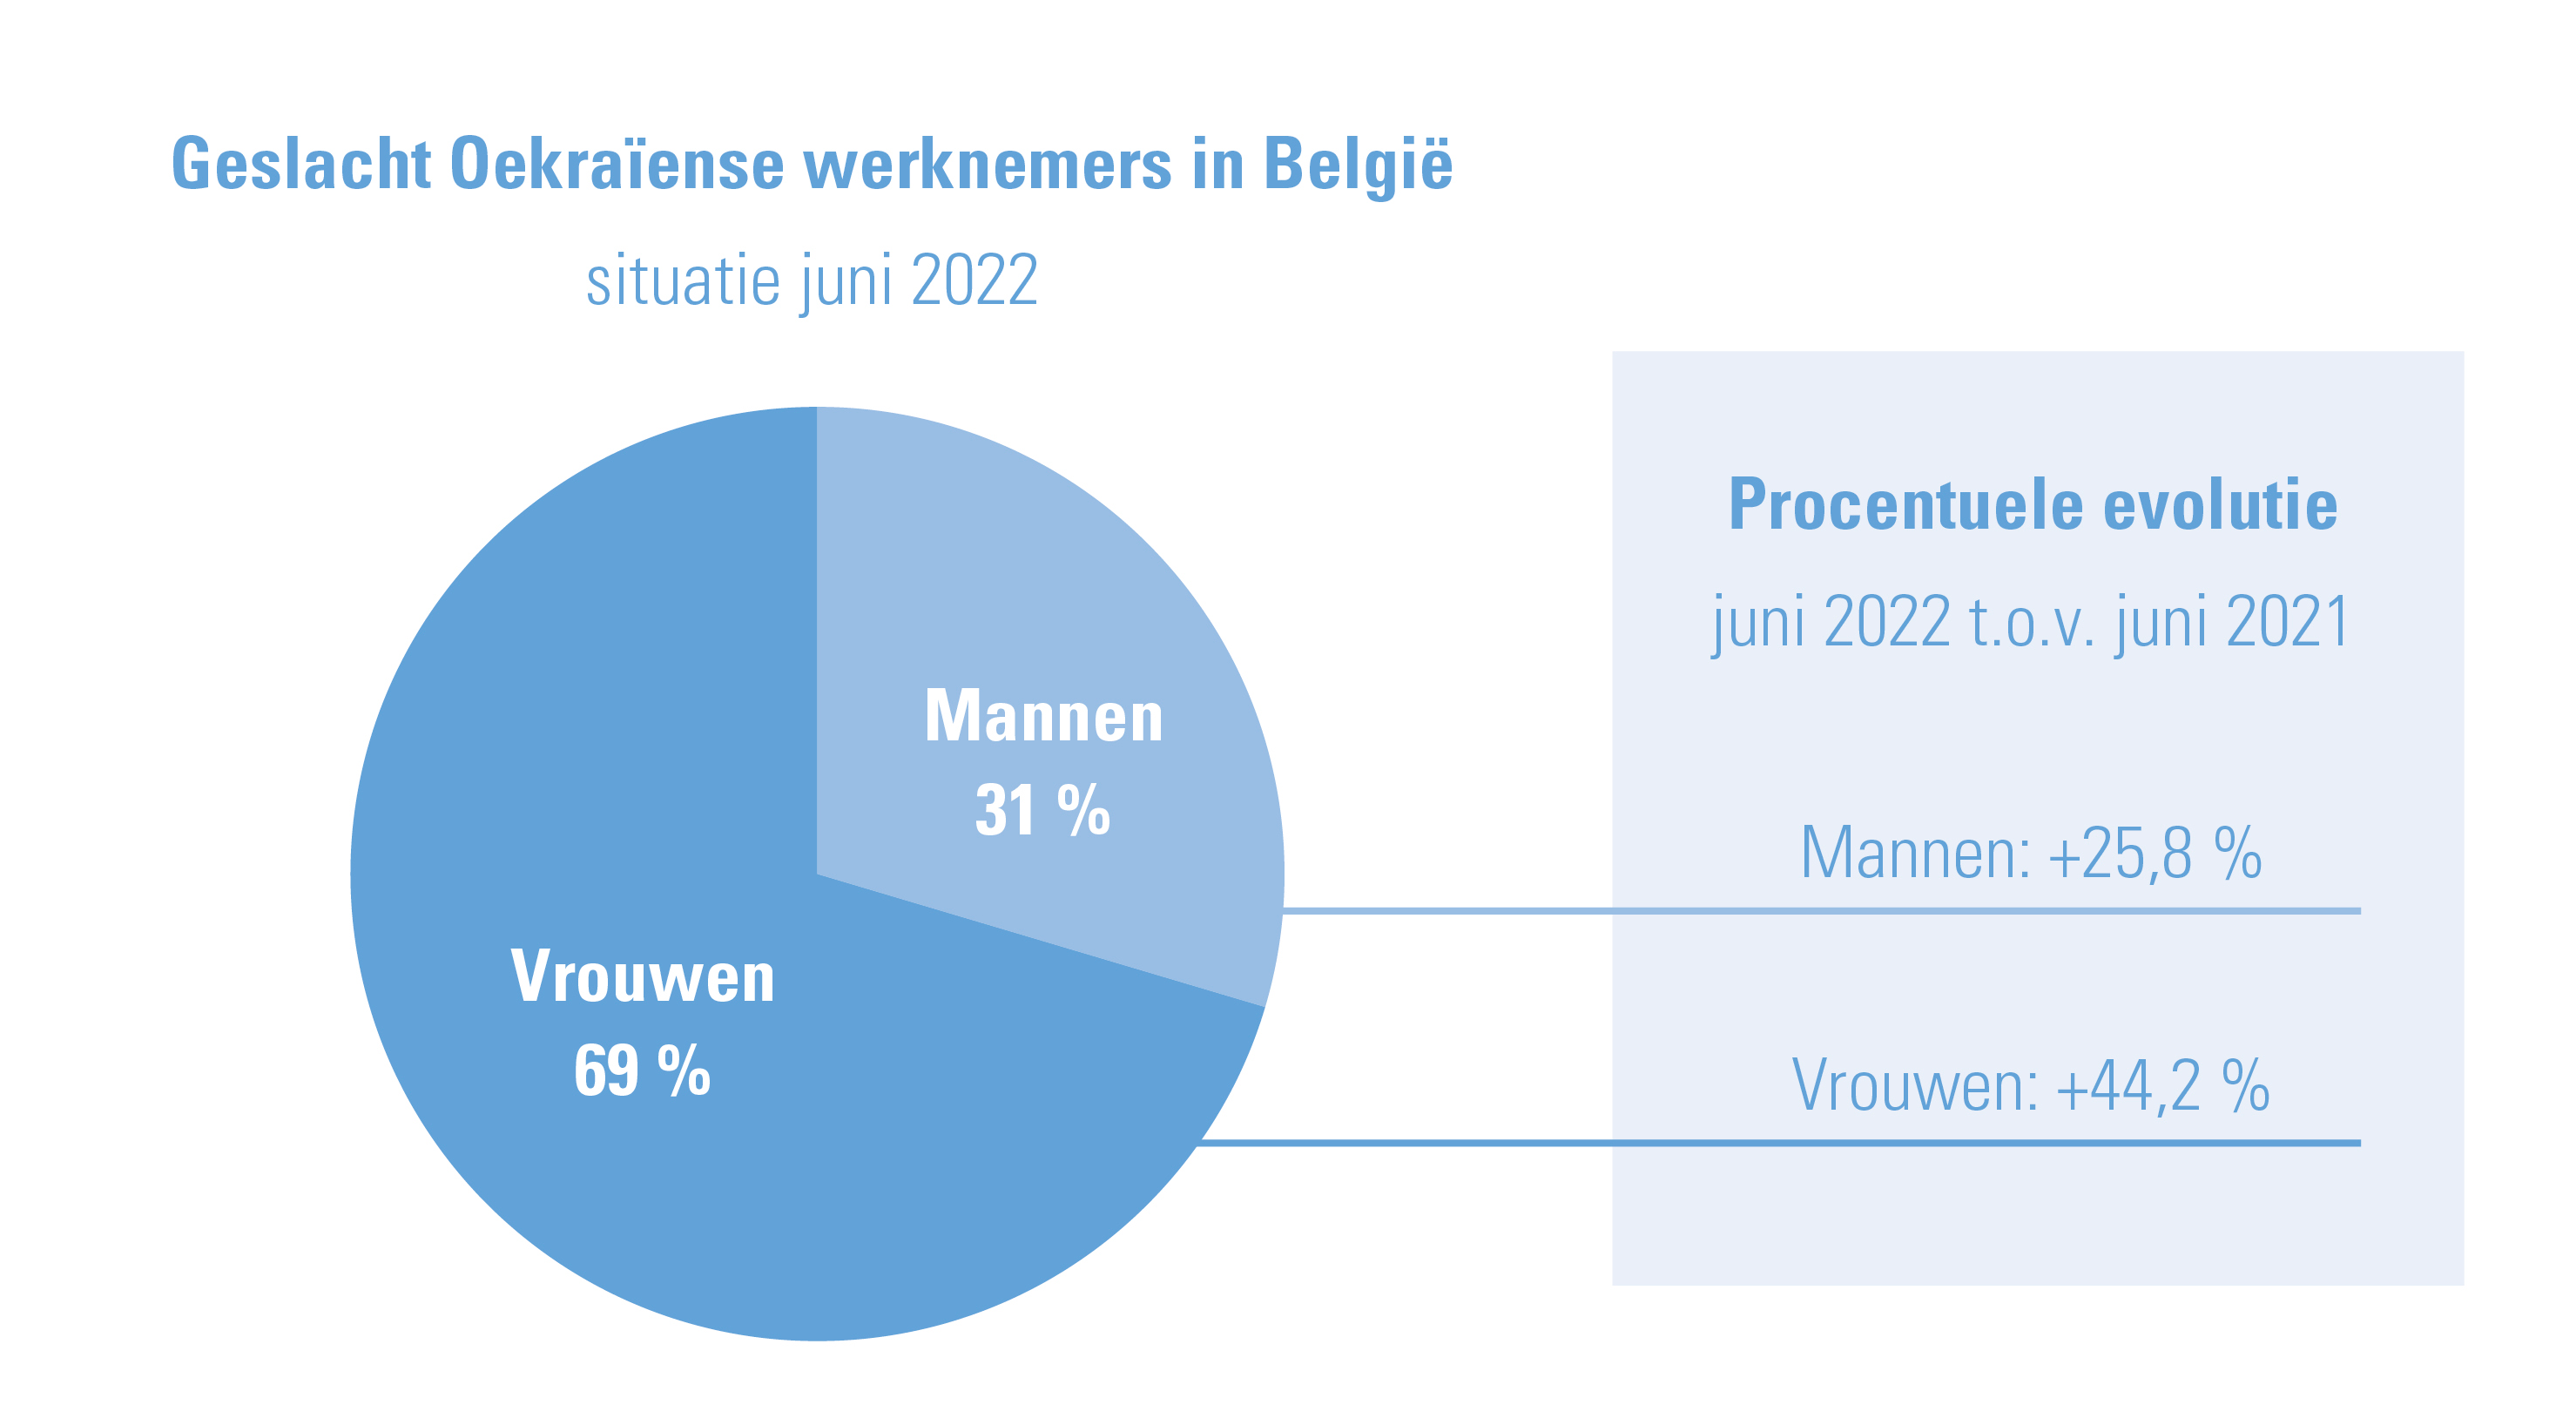 Aandeel mannelijke/vrouwelijke werknemers uit Oekraïne in België tewerkgesteld, situatie juni 2022 + procentuele evolutie t.o.v. juni 2021